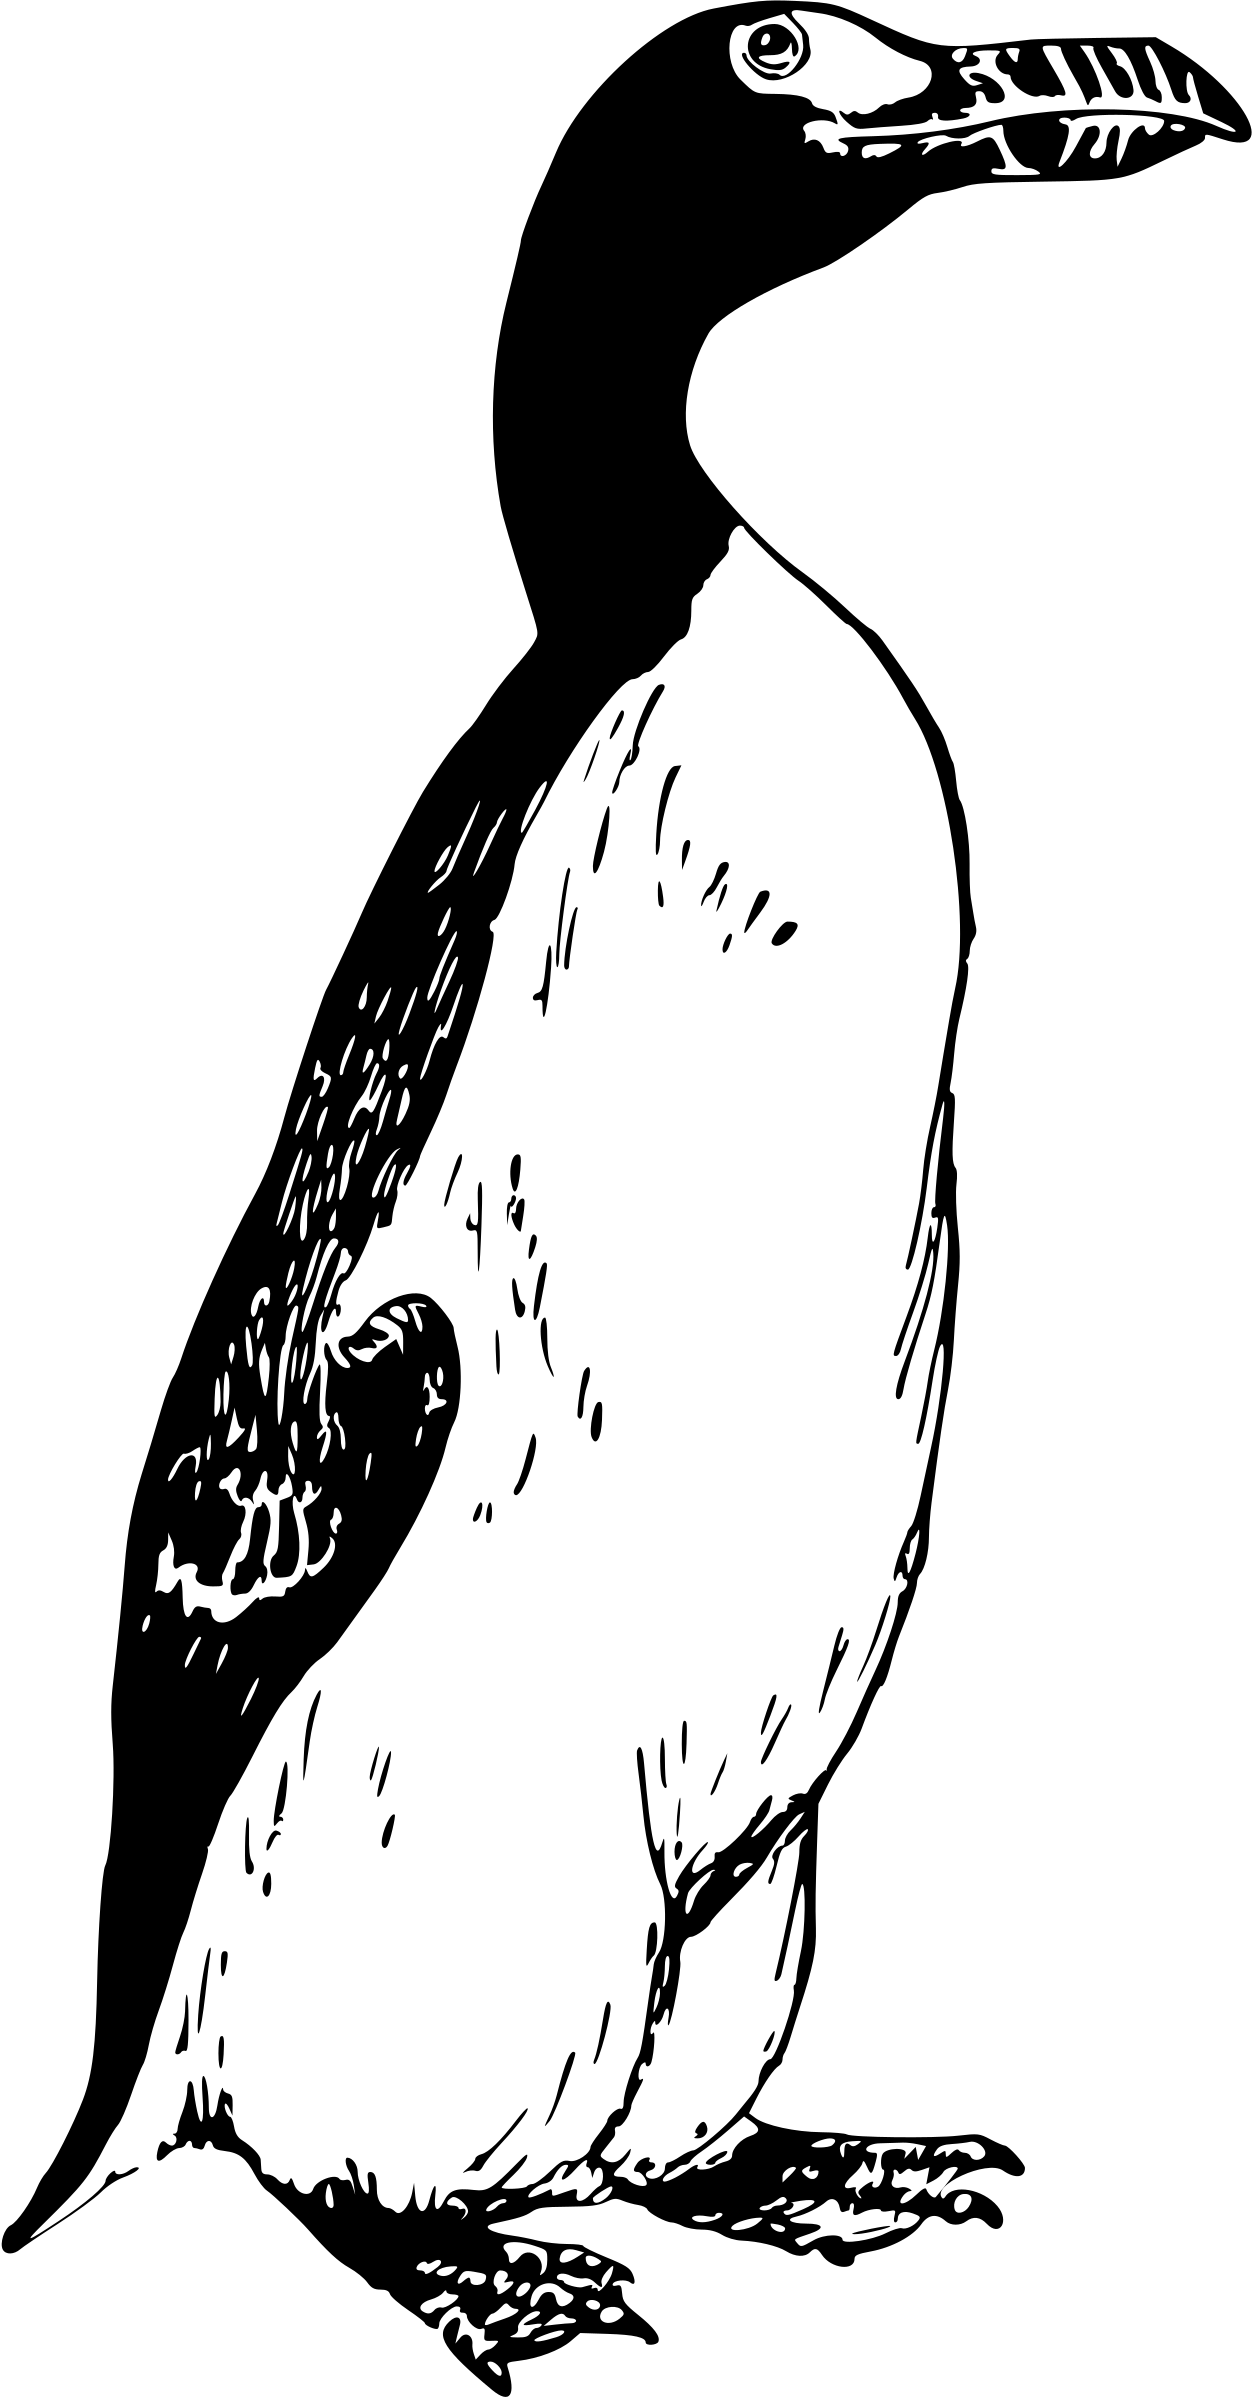 Big Image - Great Auk Transparent (1253x2400)